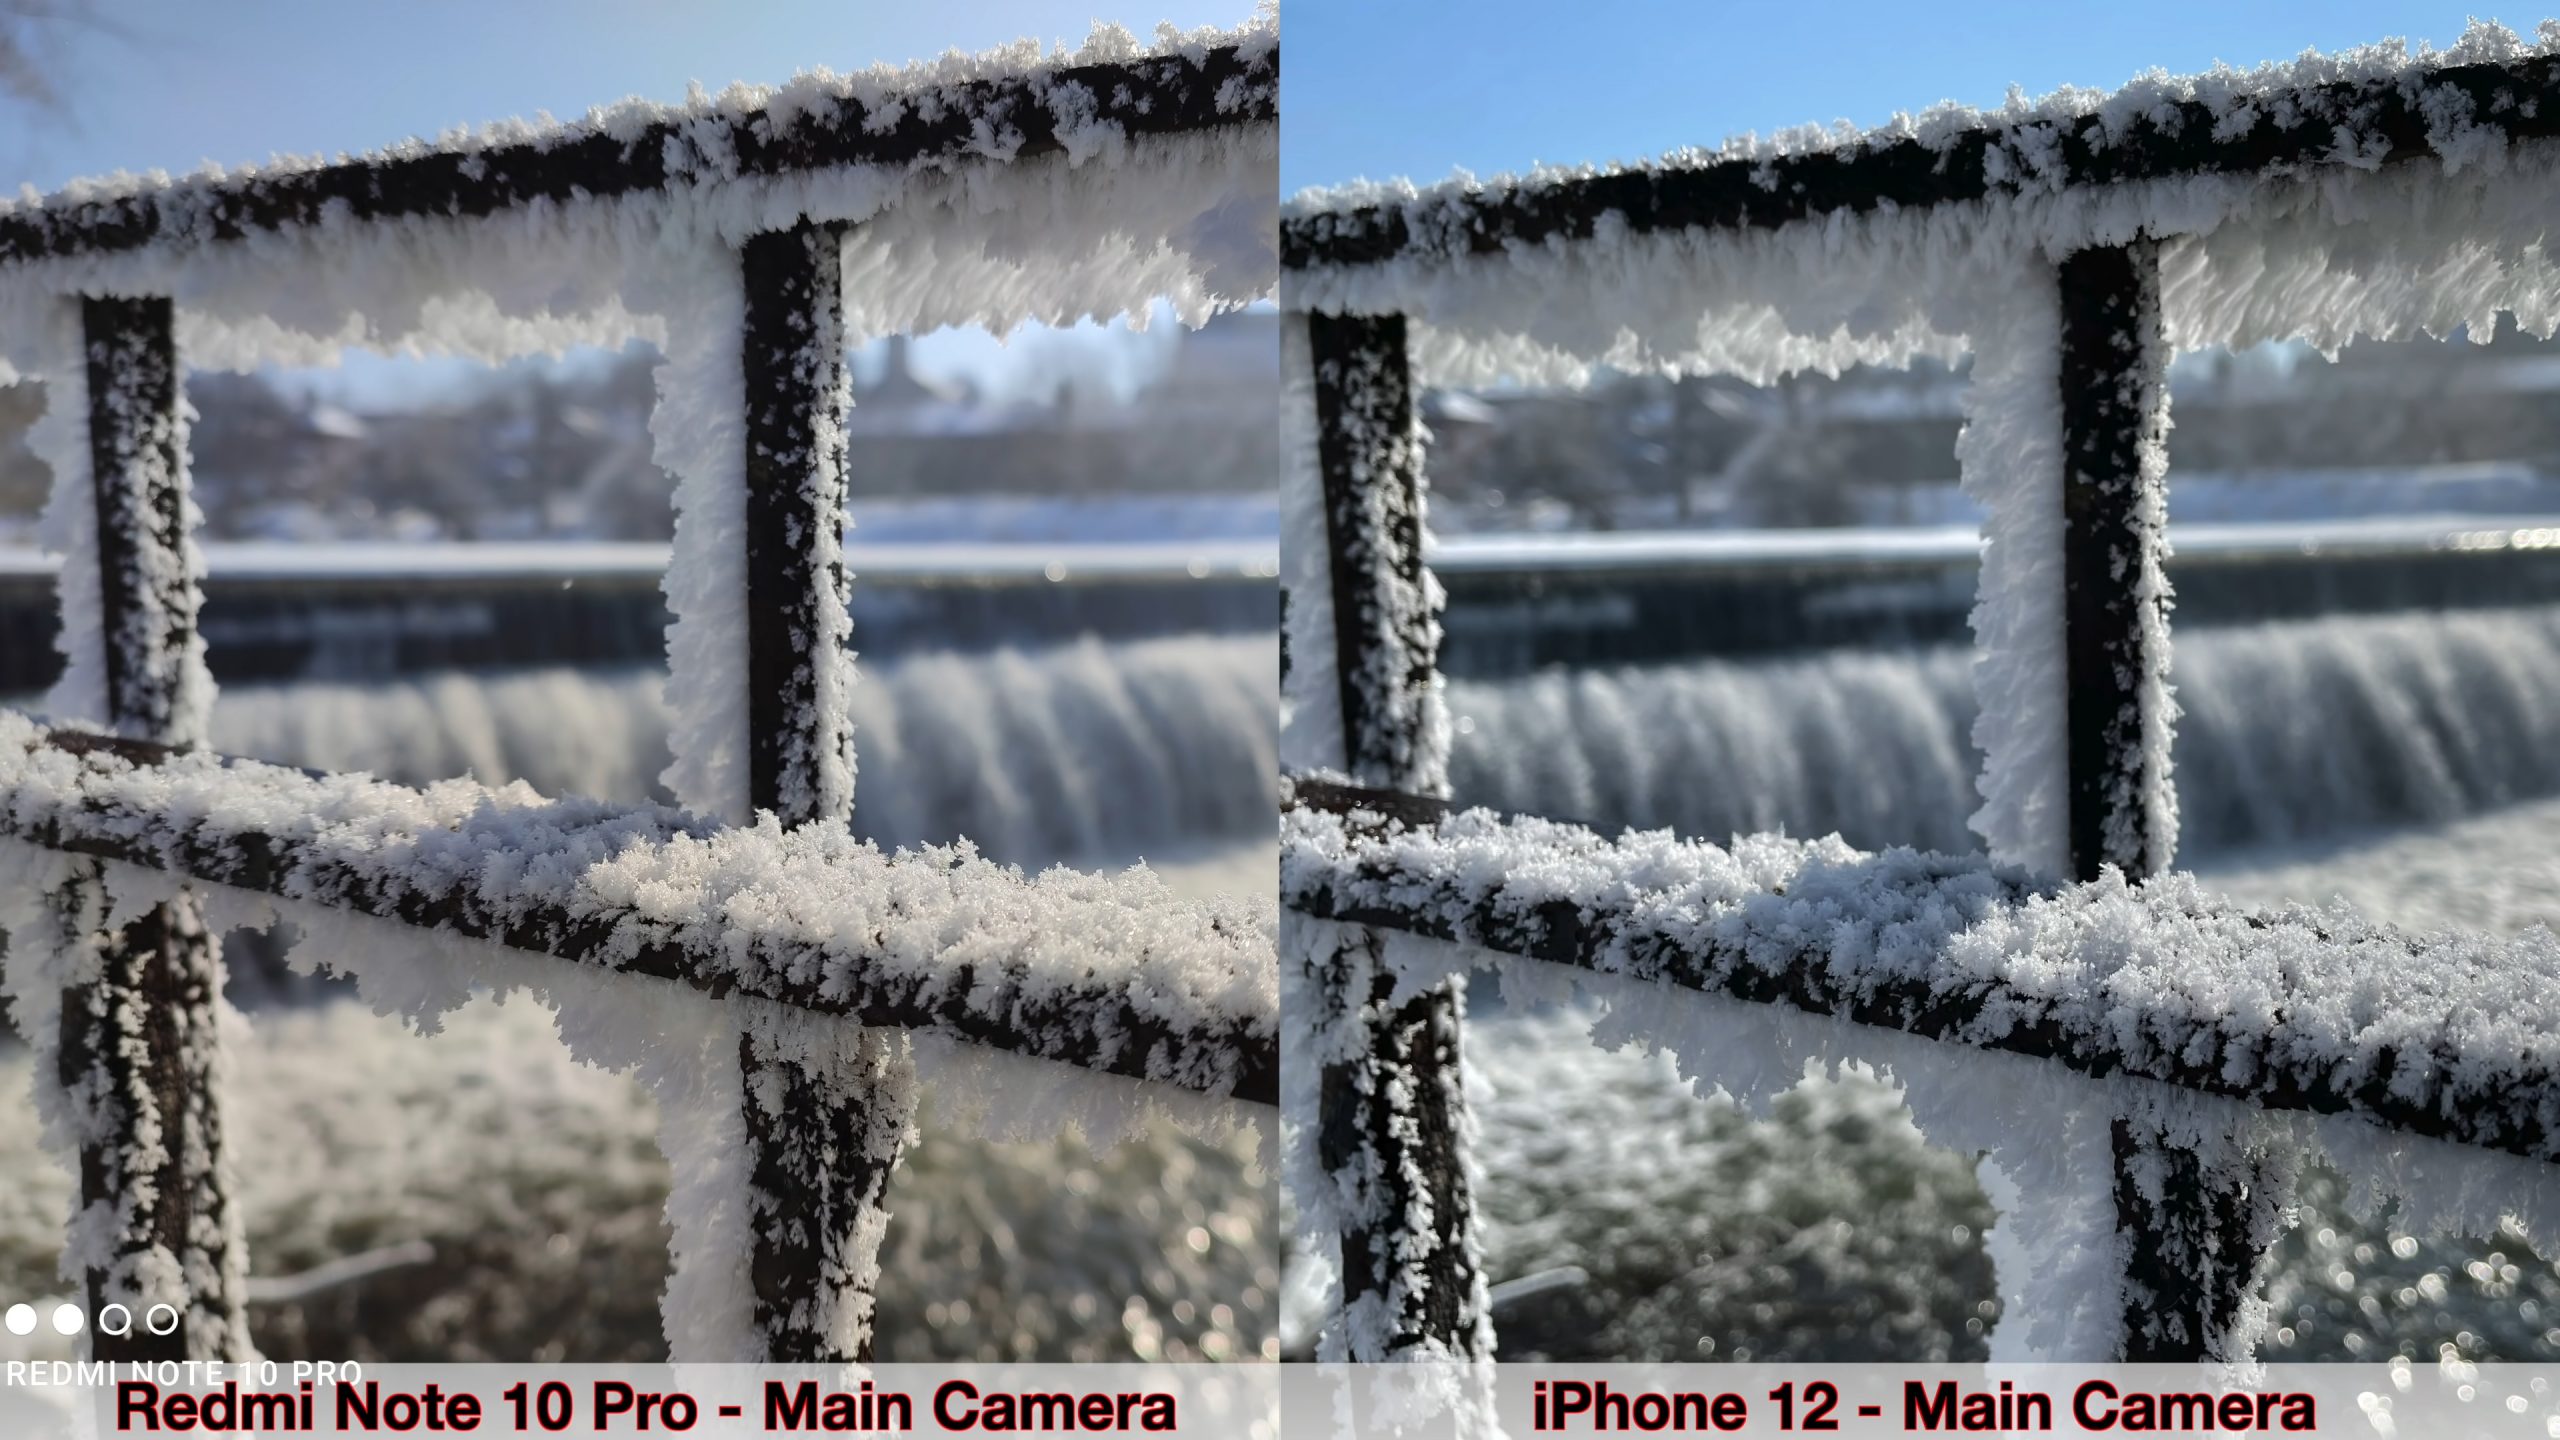 Блогер сравнил камеры Xiaomi Redmi Note 10 Pro и iPhone 12. Велика ли разница?